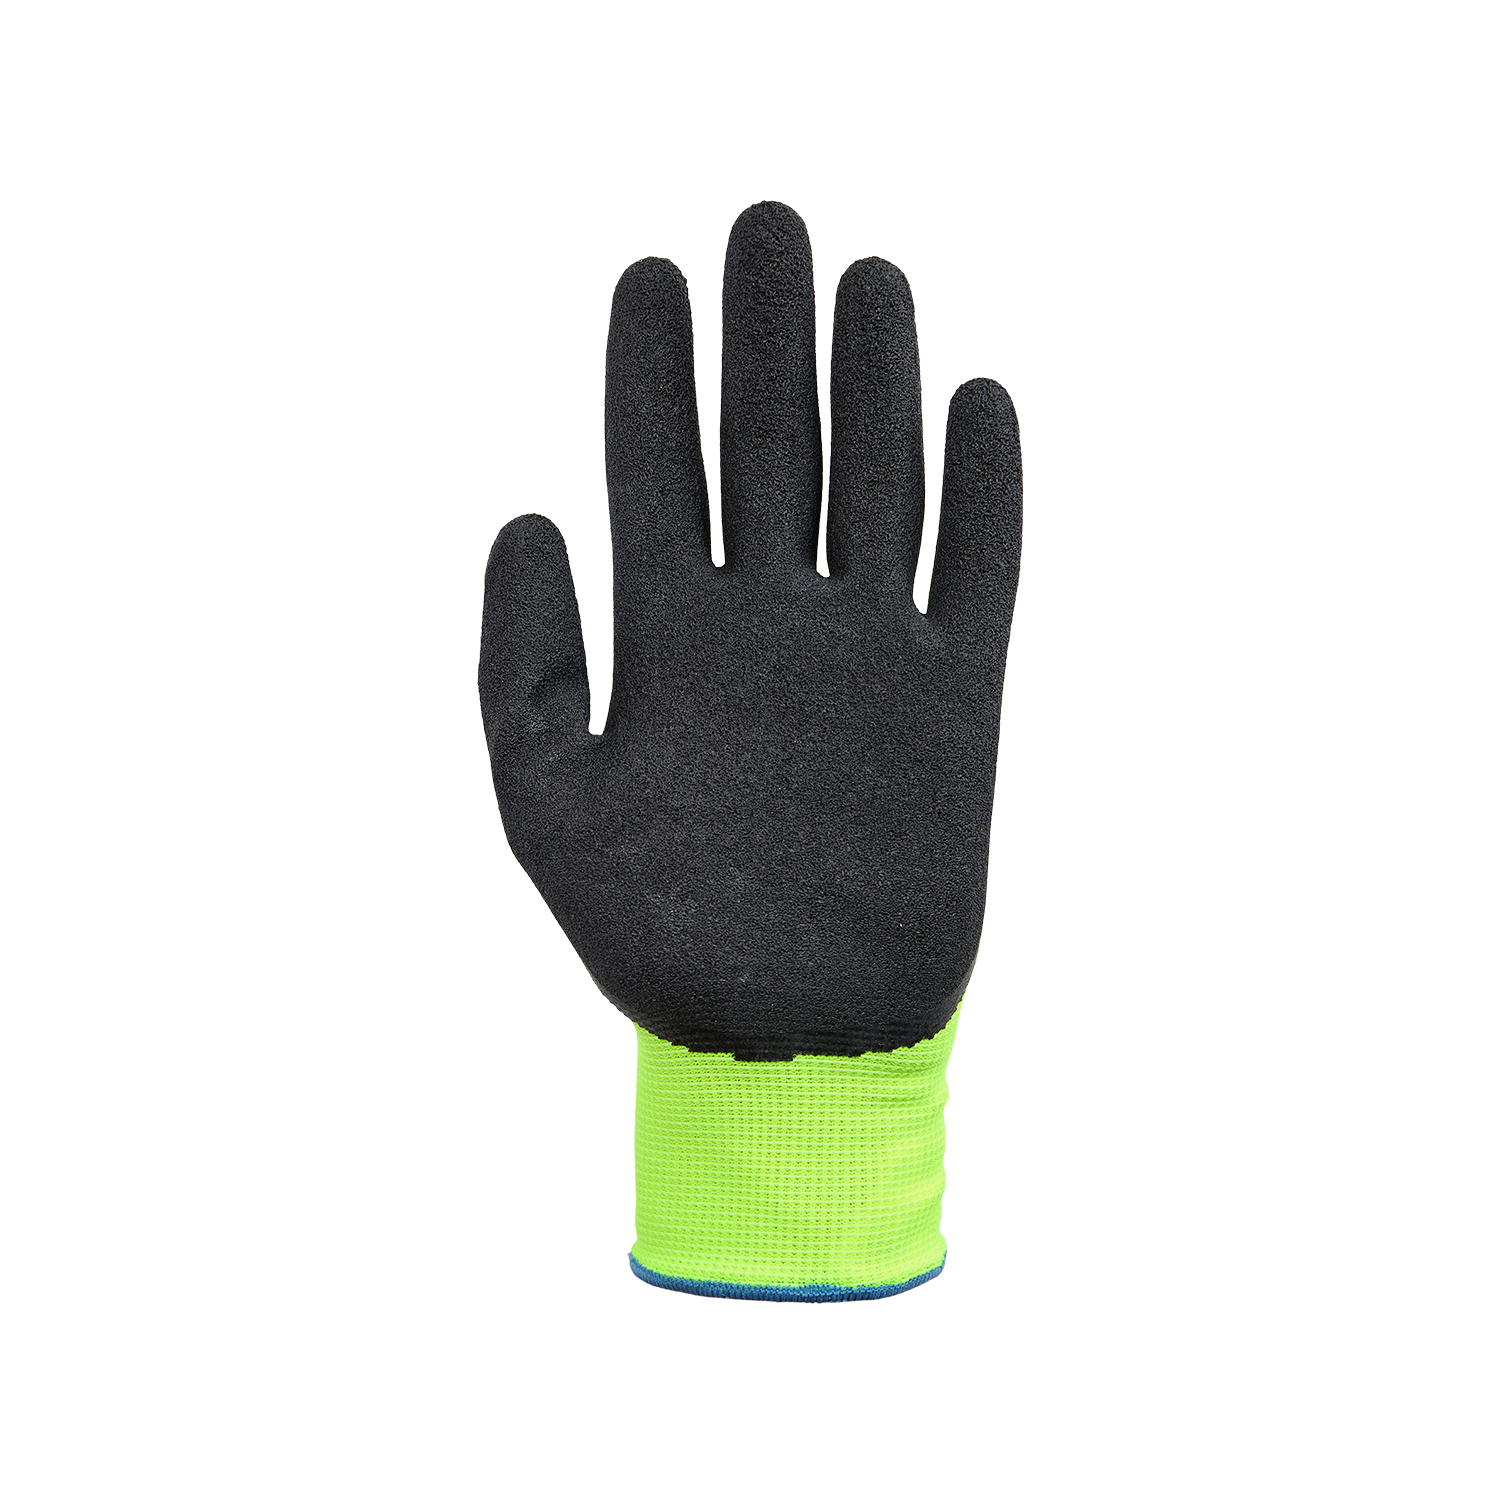 NORSE Light assembly gloves size 11